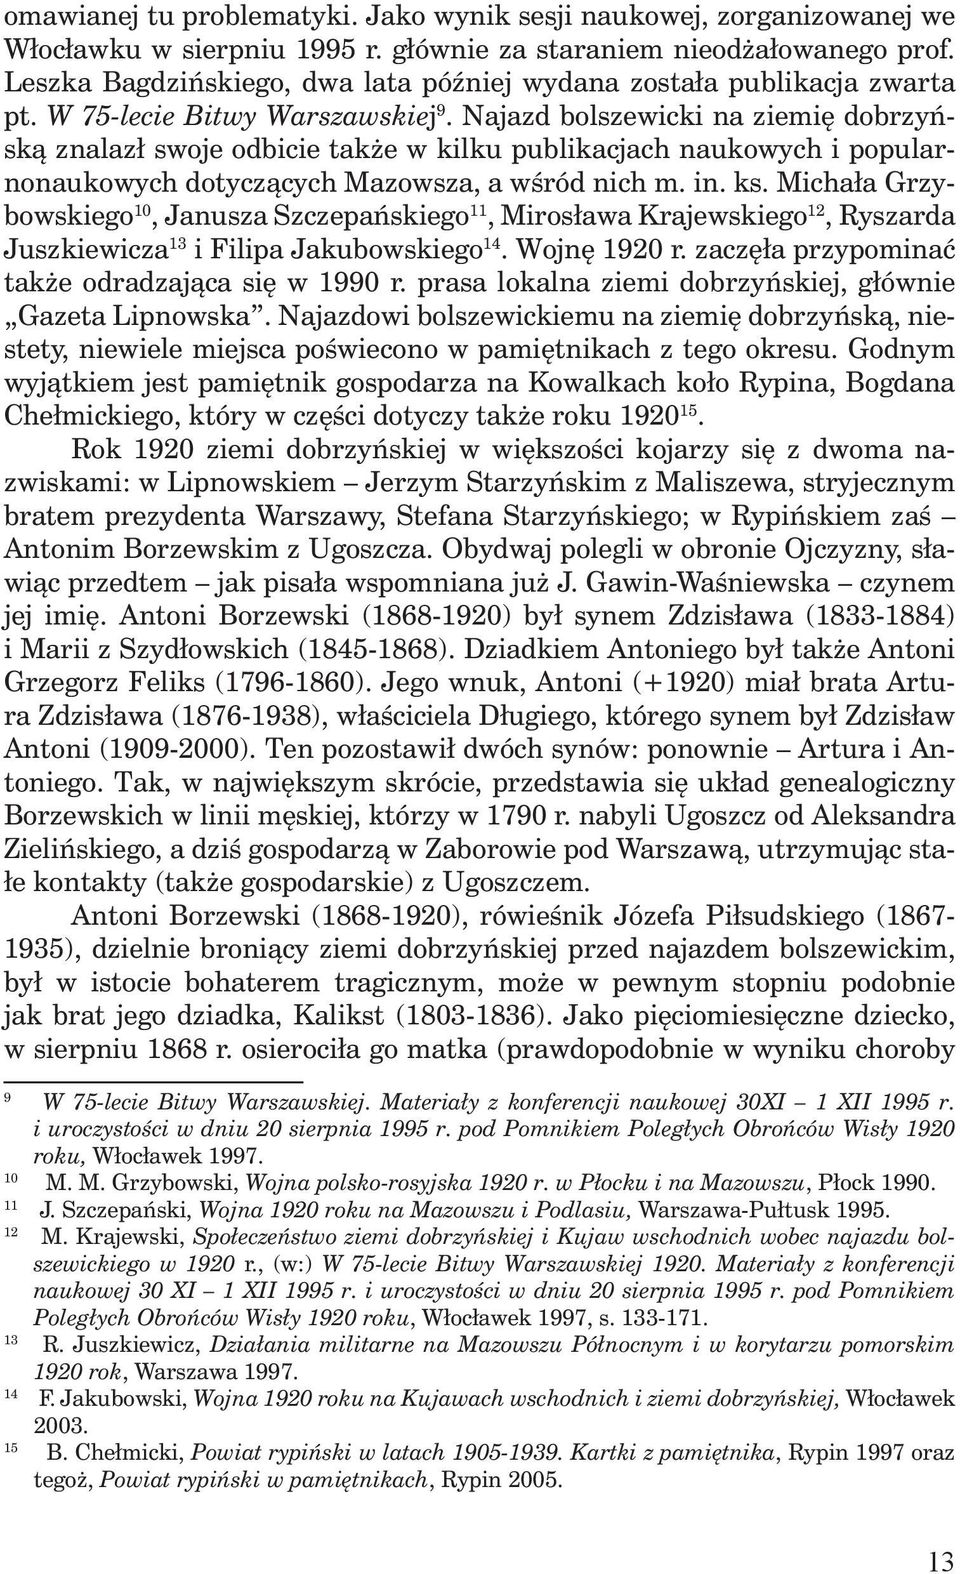 Najazd bolszewicki na ziemię dobrzyńską znalazł swoje odbicie także w kilku publikacjach naukowych i popularnonaukowych dotyczących Mazowsza, a wśród nich m. in. ks.